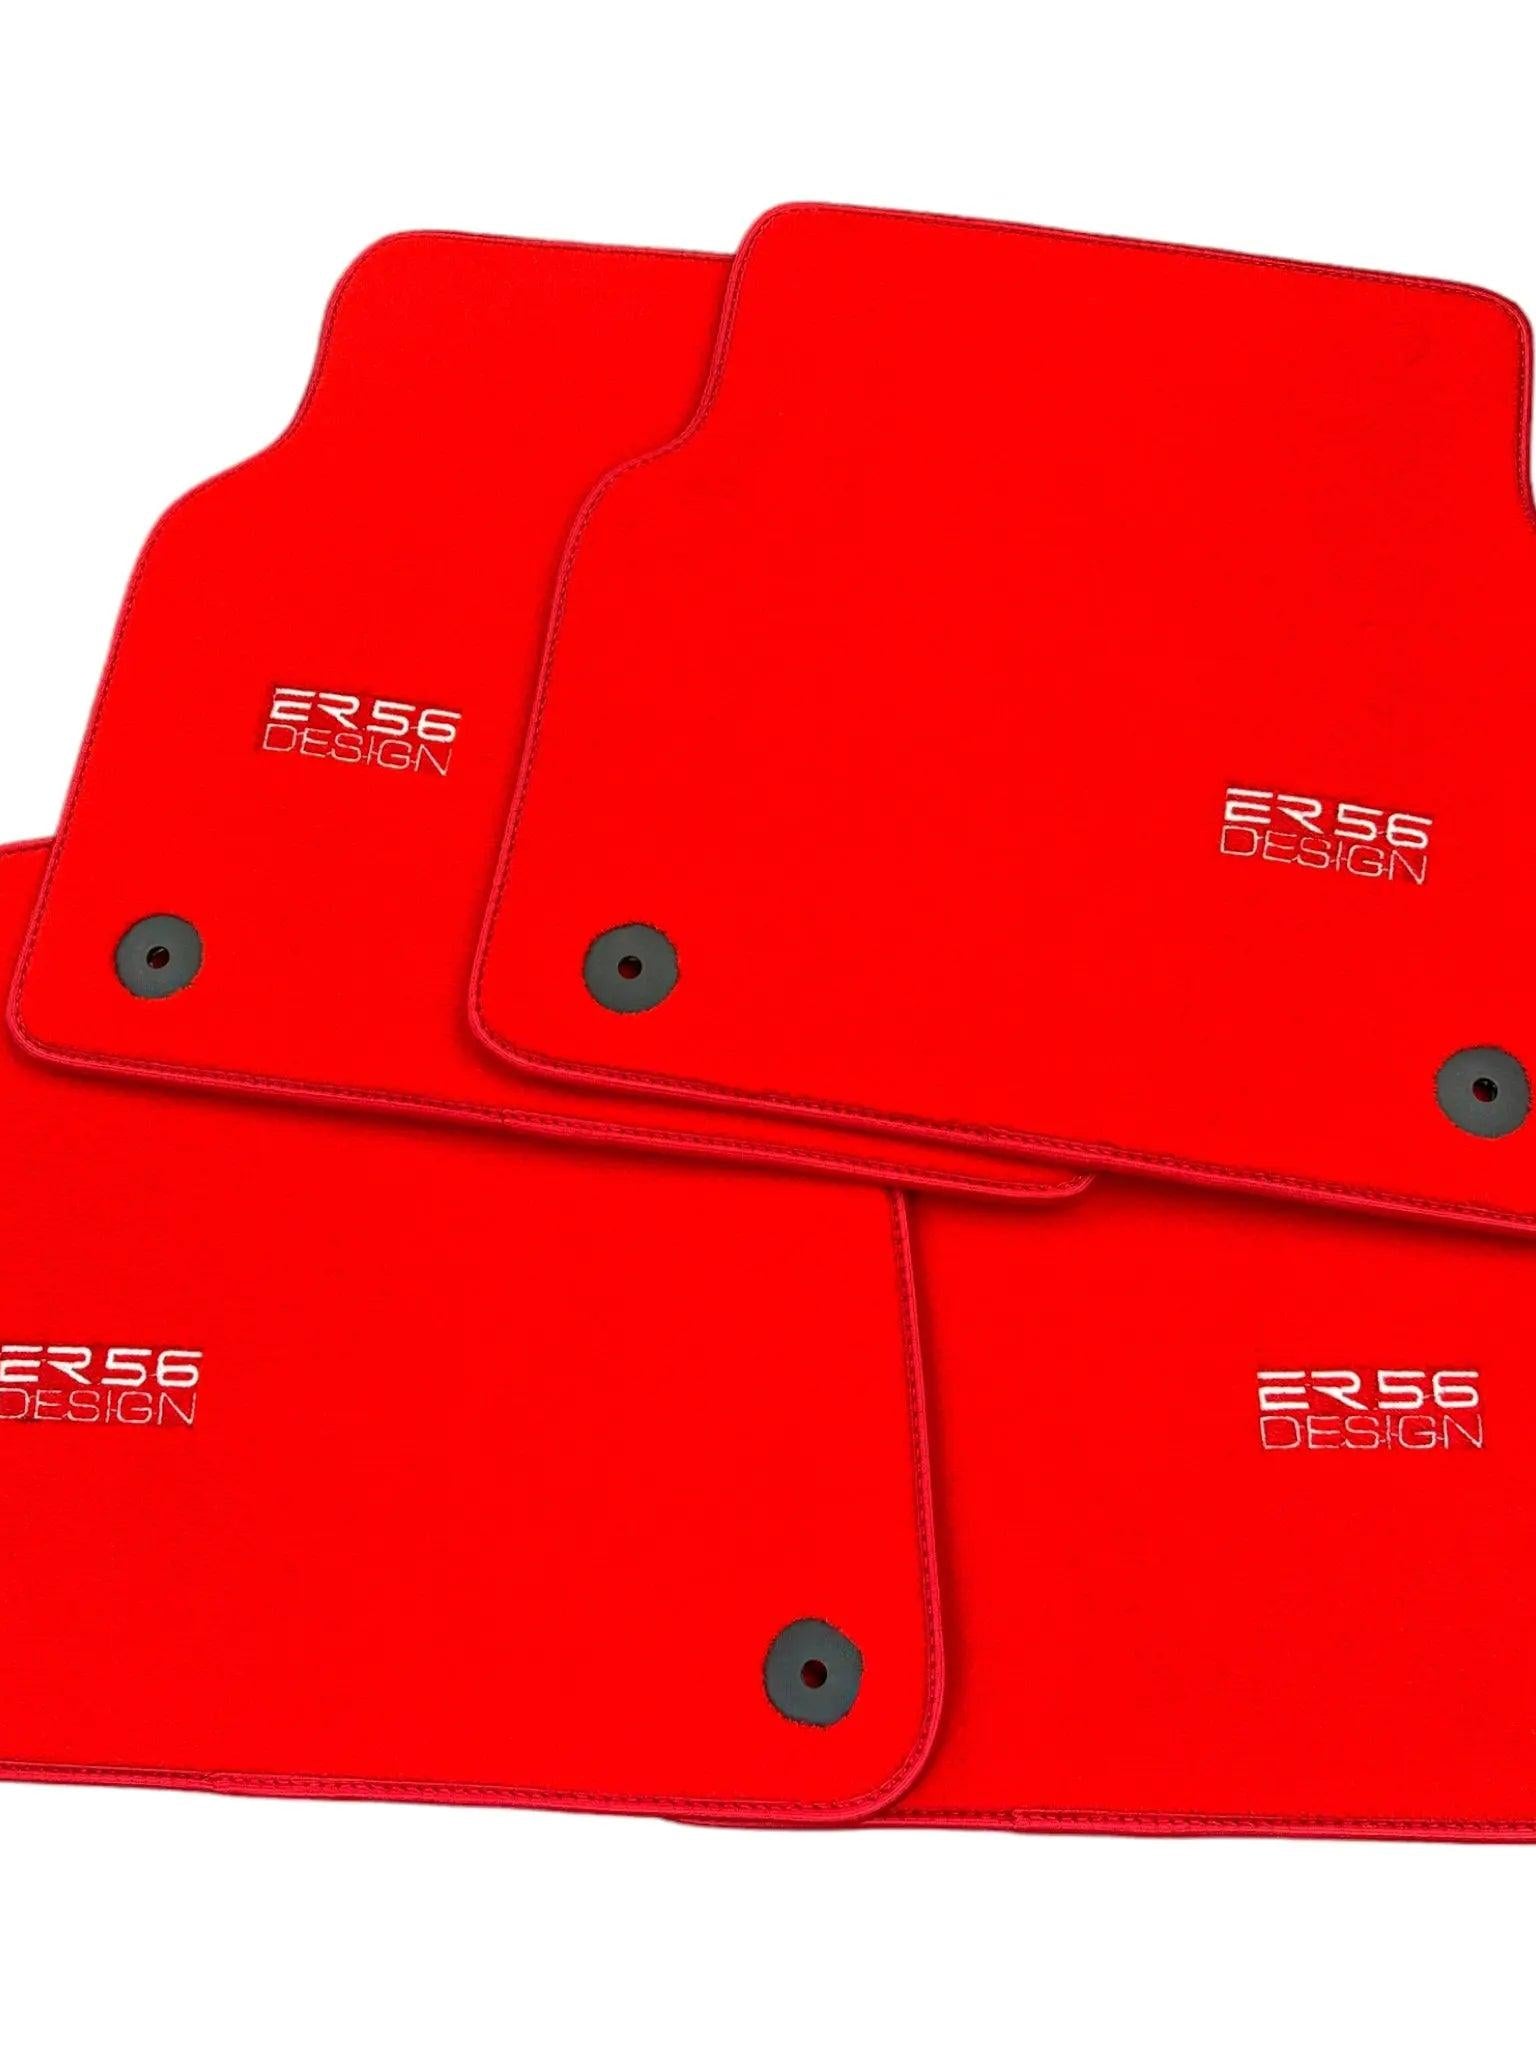 Red Floor Mats for Audi A3 - 5-door Sedan (2021 - 2024) | ER56 Design